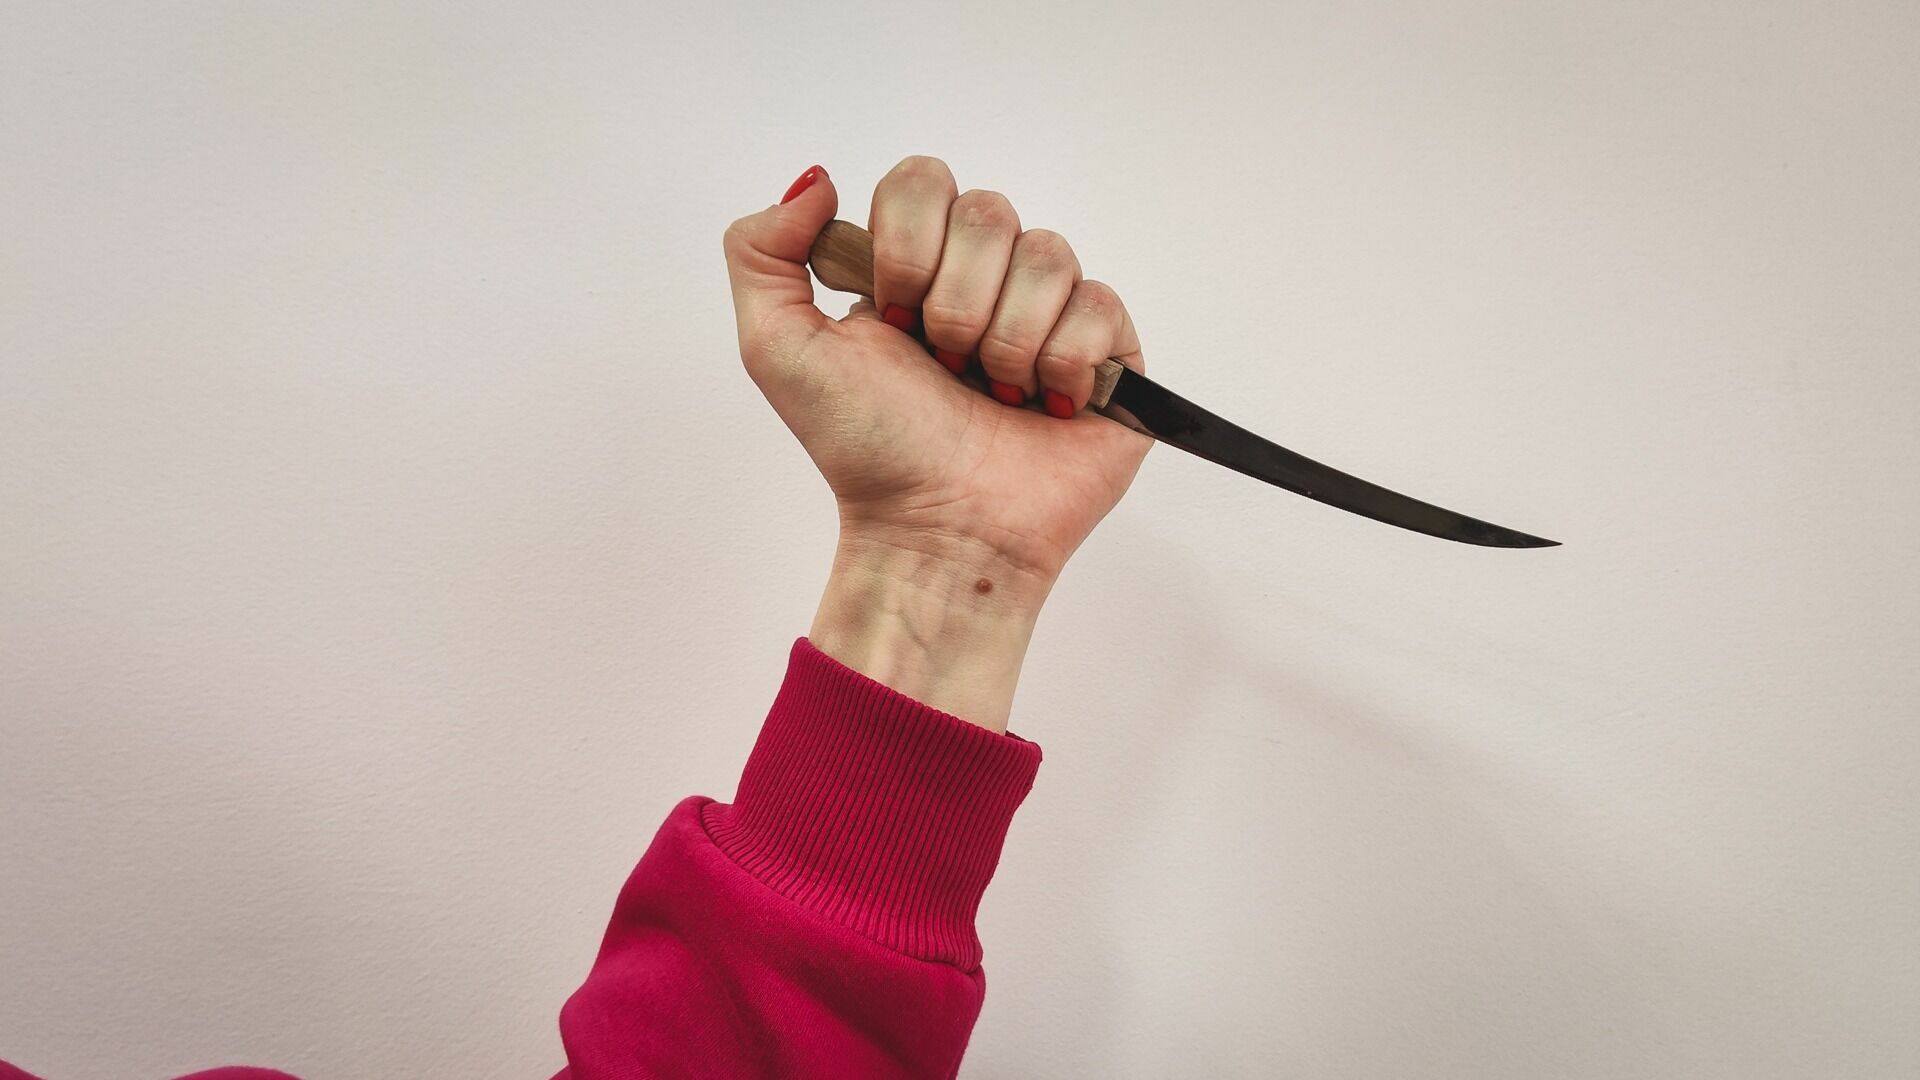 Девочка пырнула ножом двоих одноклассников в школе в Иглино